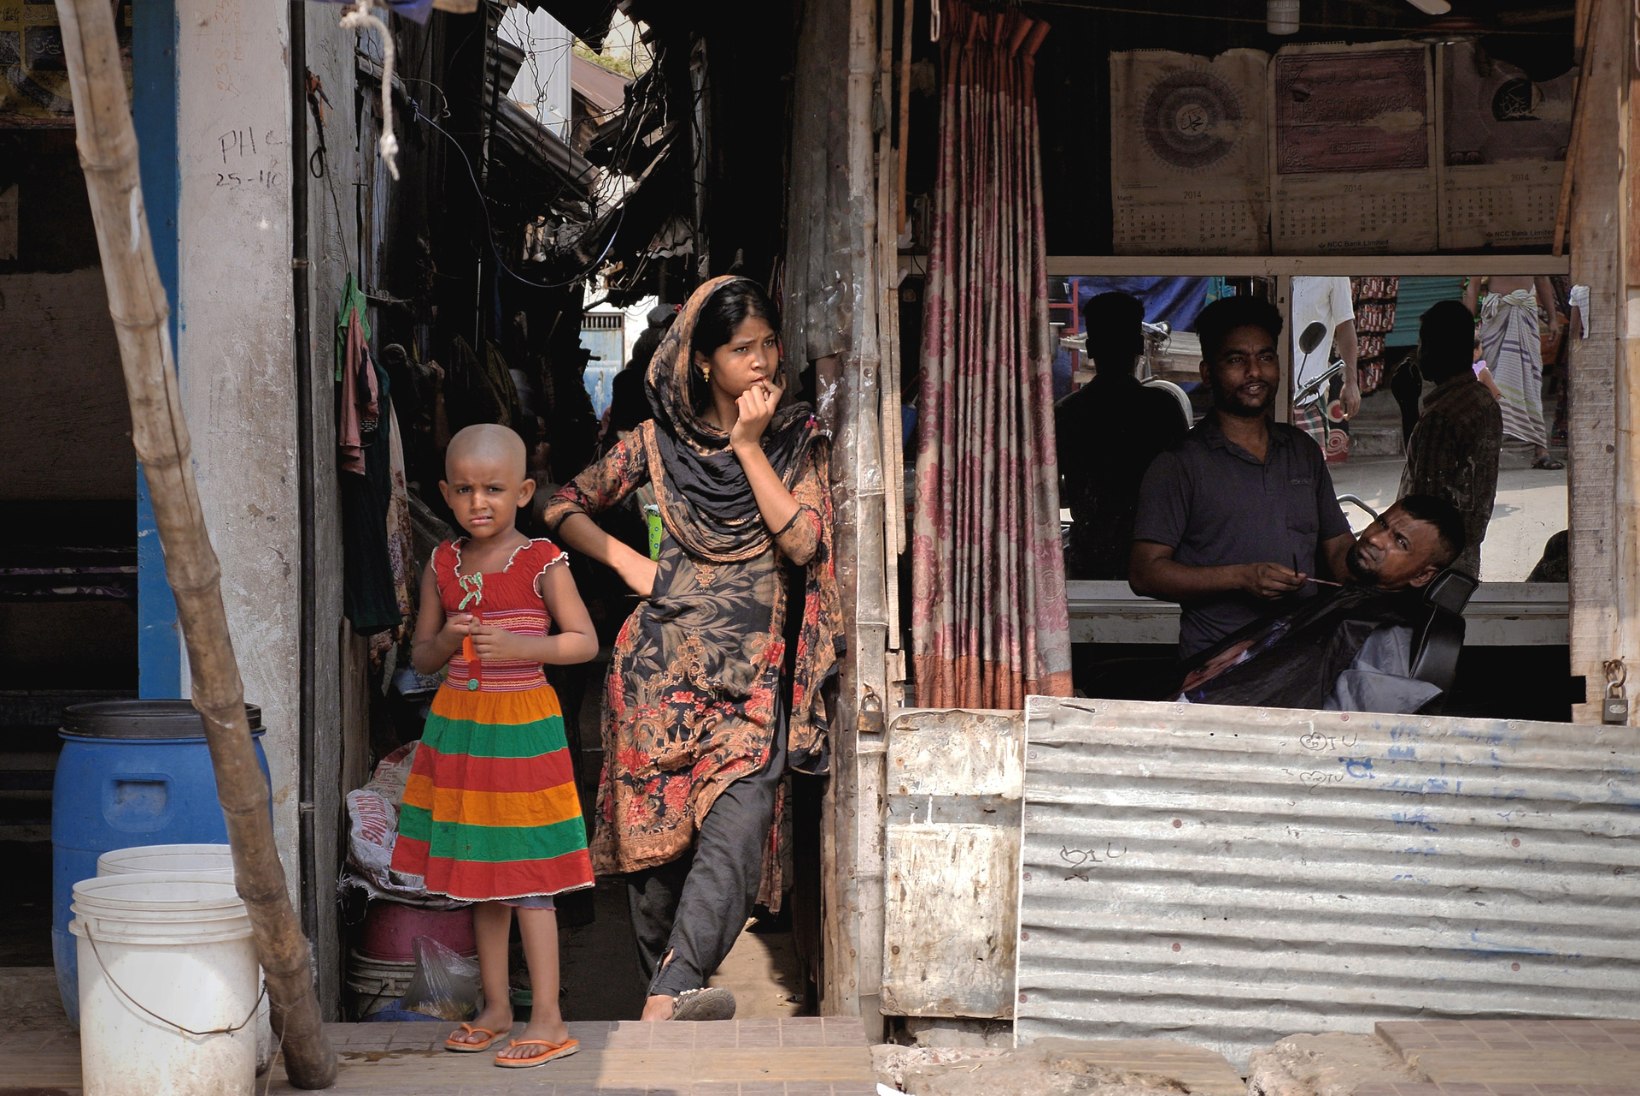 ÕHTULEHT BANGLADESHIS | „VAESTEL POLE UNISTUSI.“ Elu megalinna slummis: üleujutatud põrand, tulekeeled koduukse taga ja lootusekiir